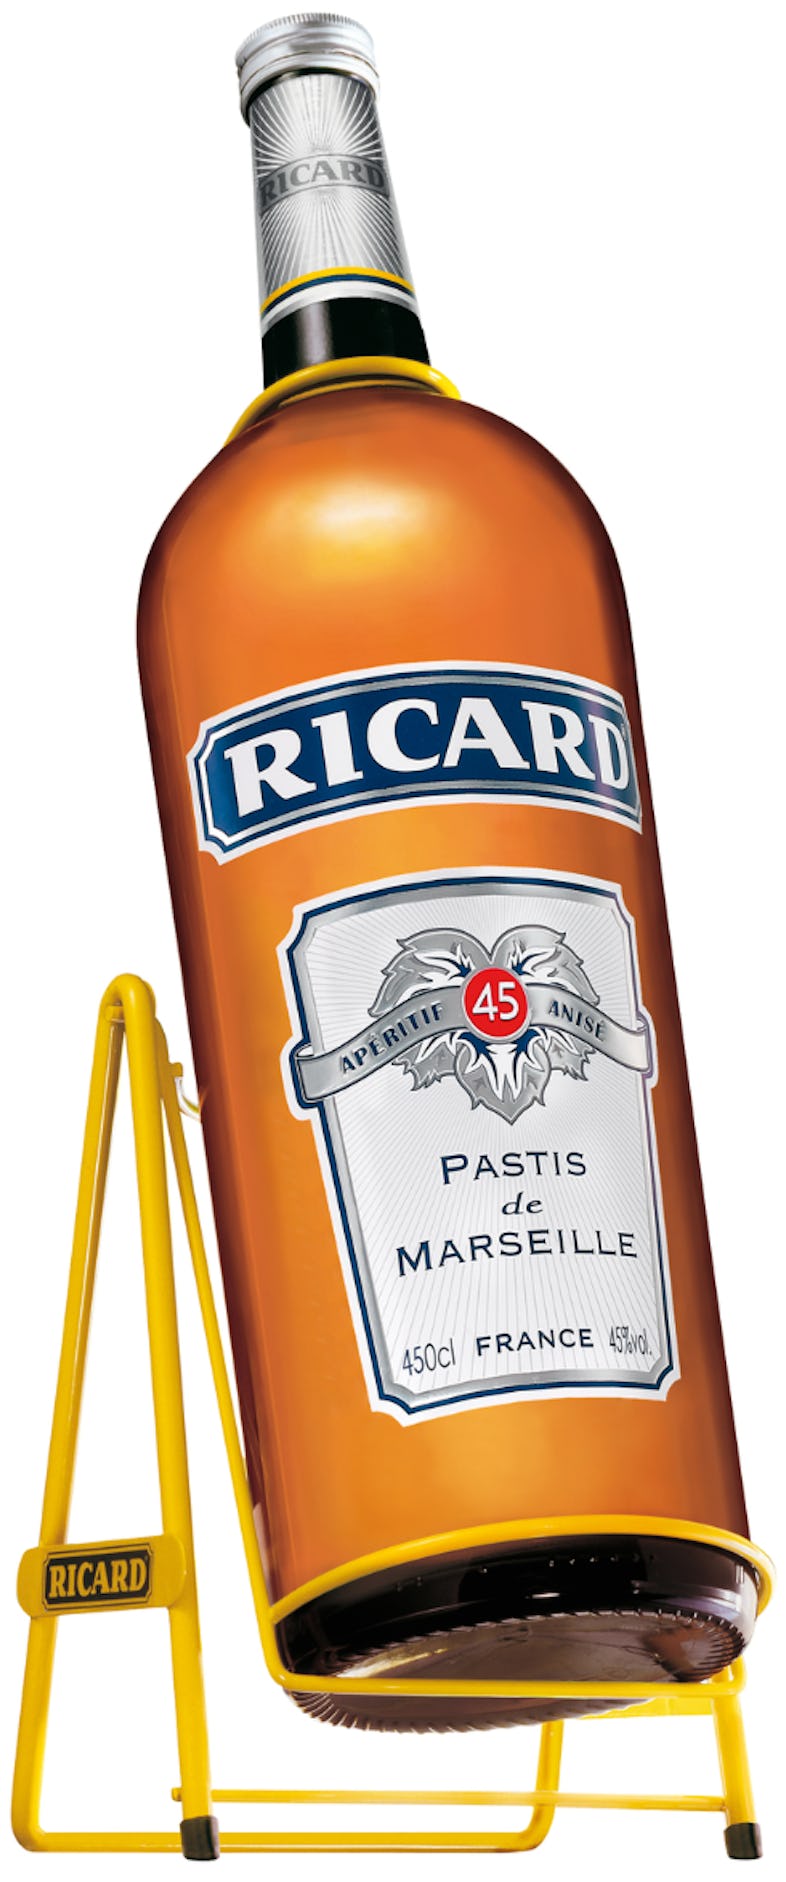 Pastis de Marseille Pernod Ricard Ricard - Gallon avec balancelle